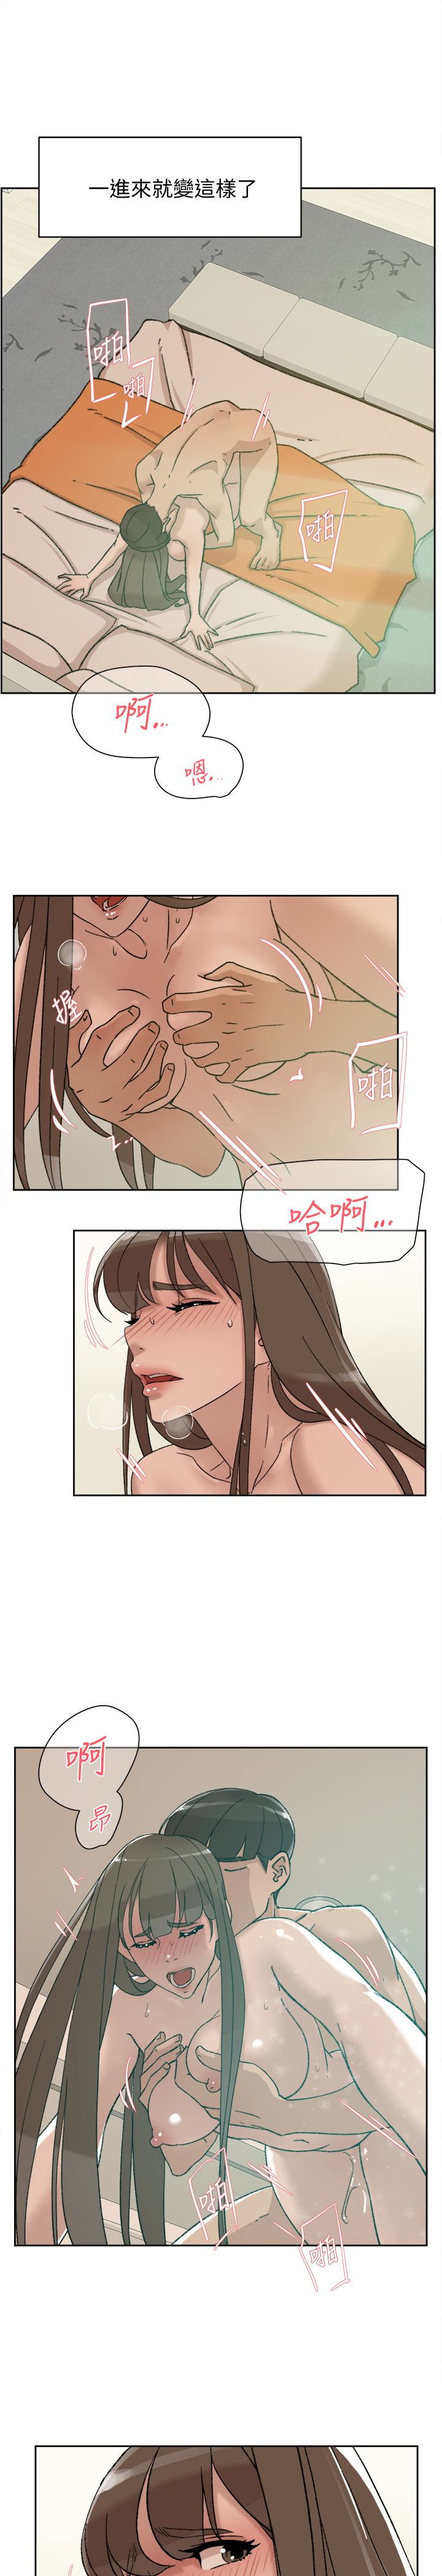 韩国污漫画 她的高跟鞋(無刪減) 第106话-与世润积极的肉体关系 3